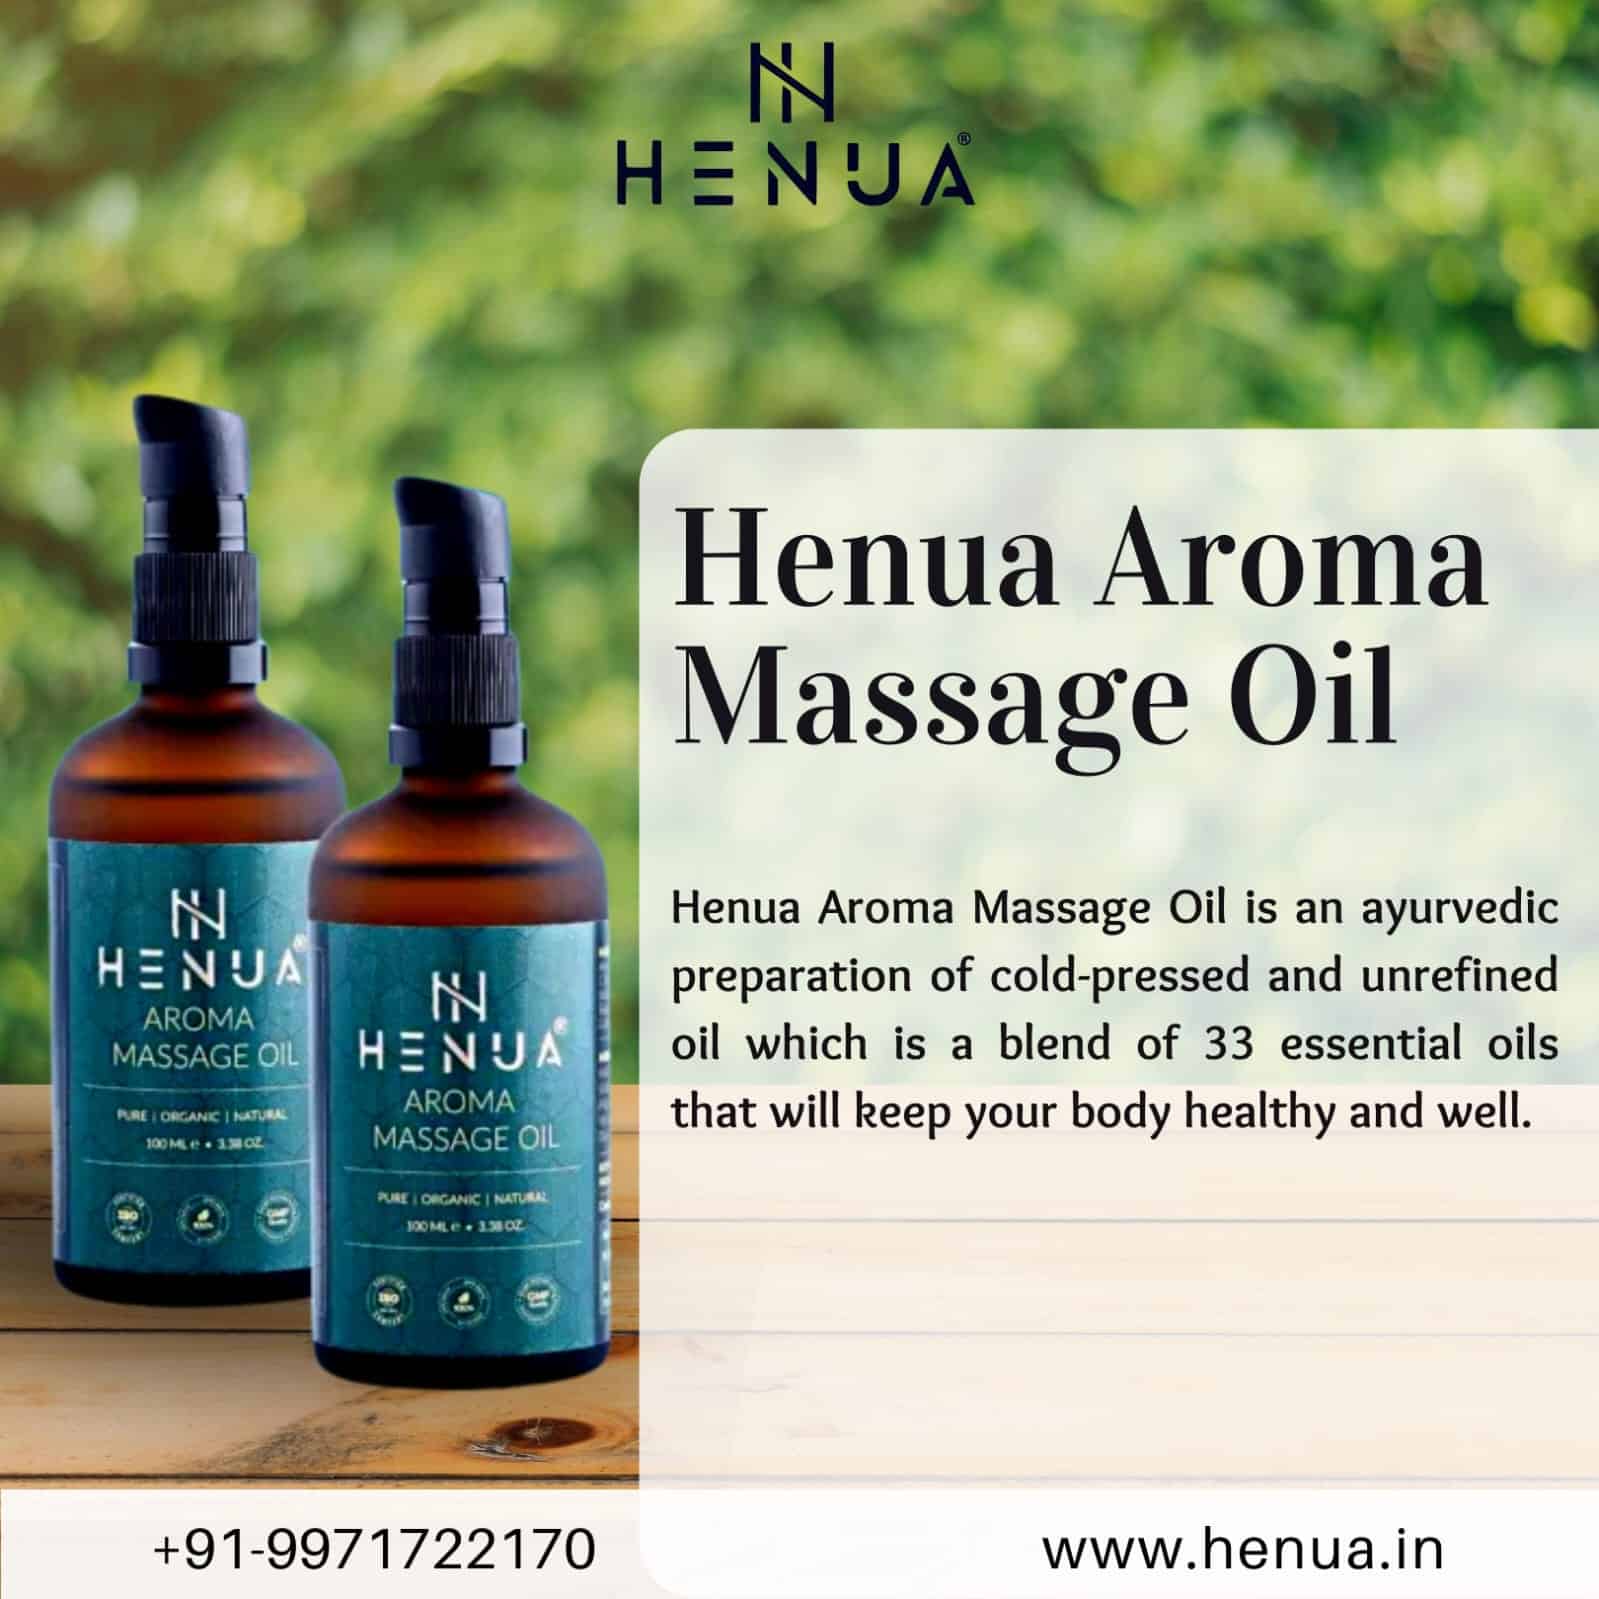 Aroma-Massage-Oil